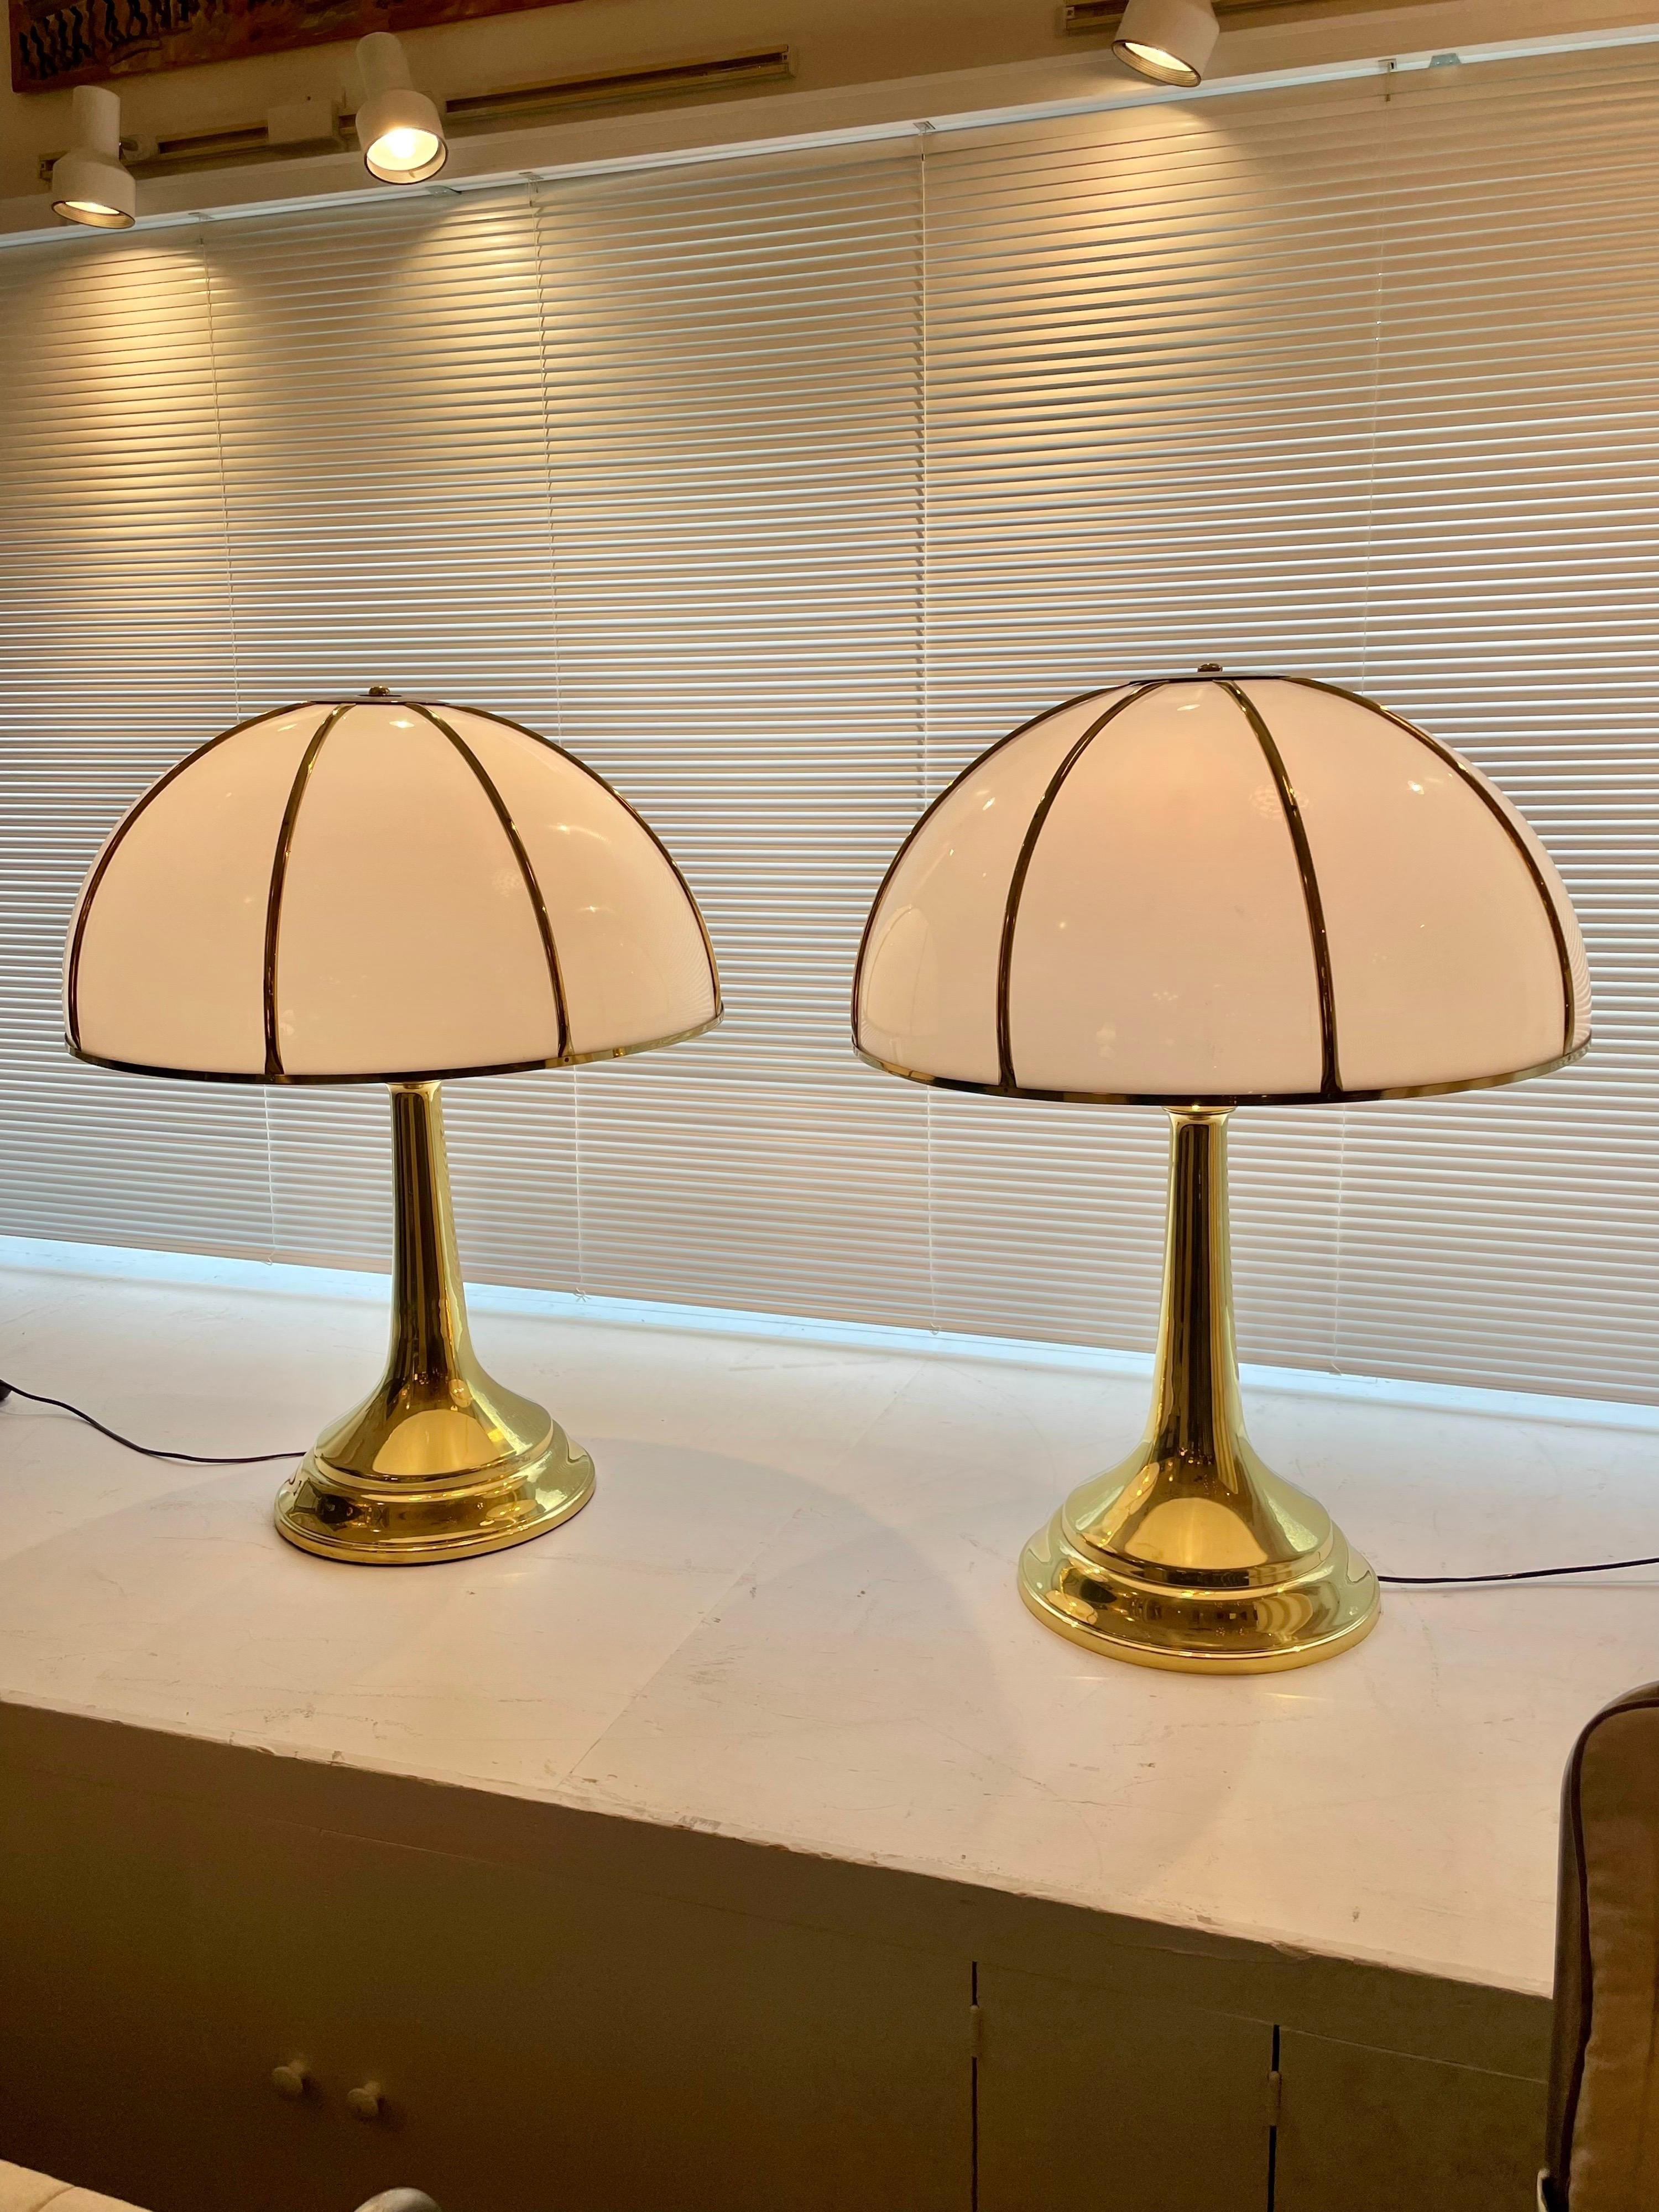 Dies sind die größten Fungo-Lampen von Gabriella Crespi mit einem Sockel aus Messing und weißen gewölbten Acrylschirmen. Sie sind am Sockel und an der Oberseite des Lampenschirms doppelt signiert.